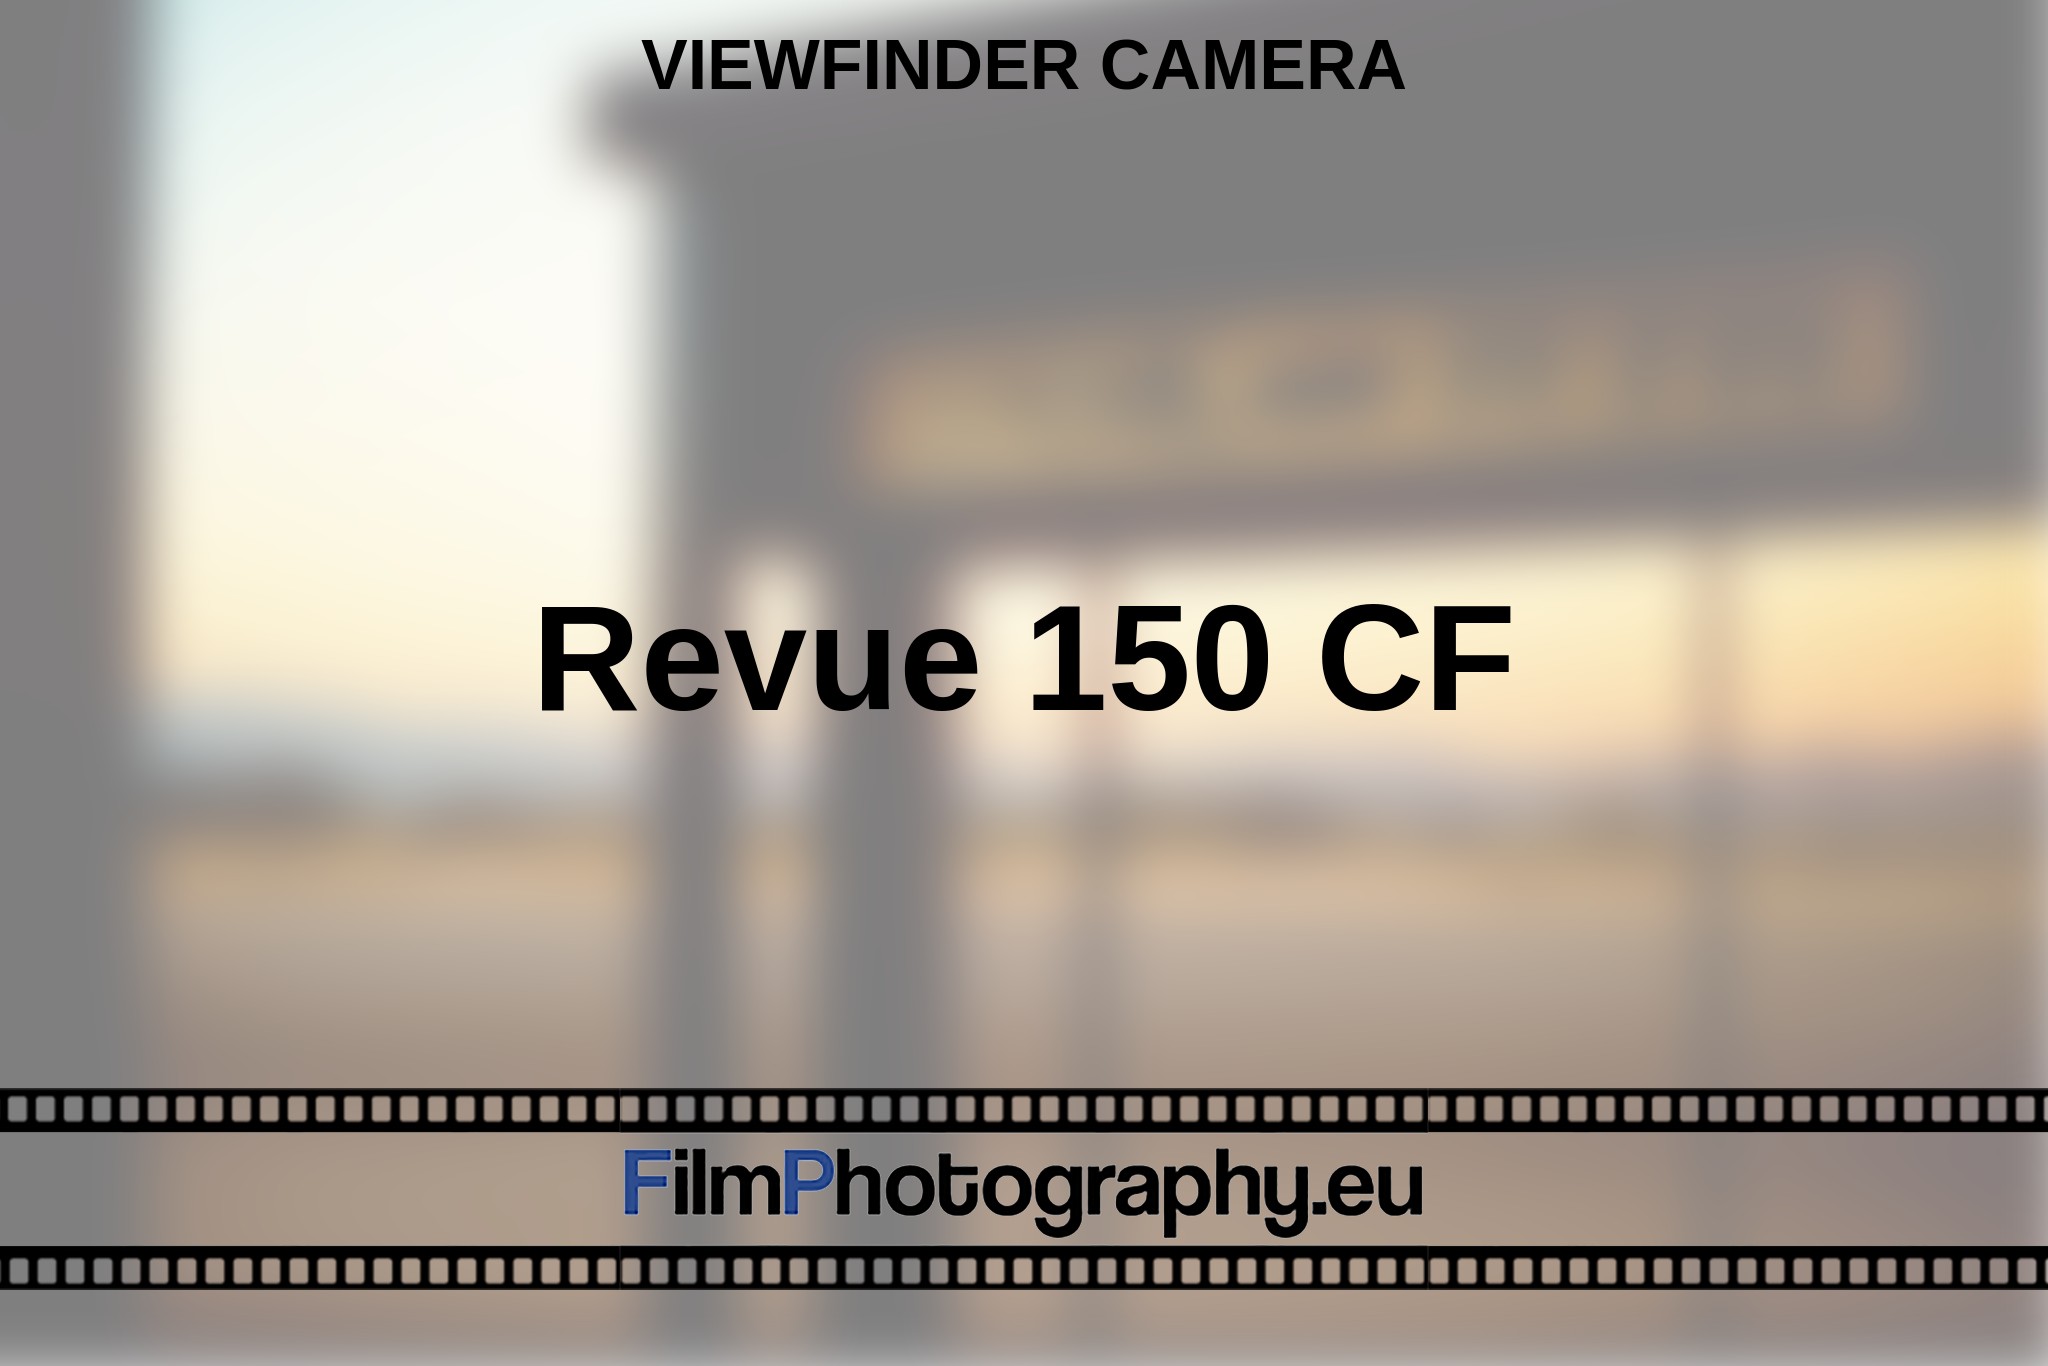 revue-150-cf-viewfinder-camera-en-bnv.jpg